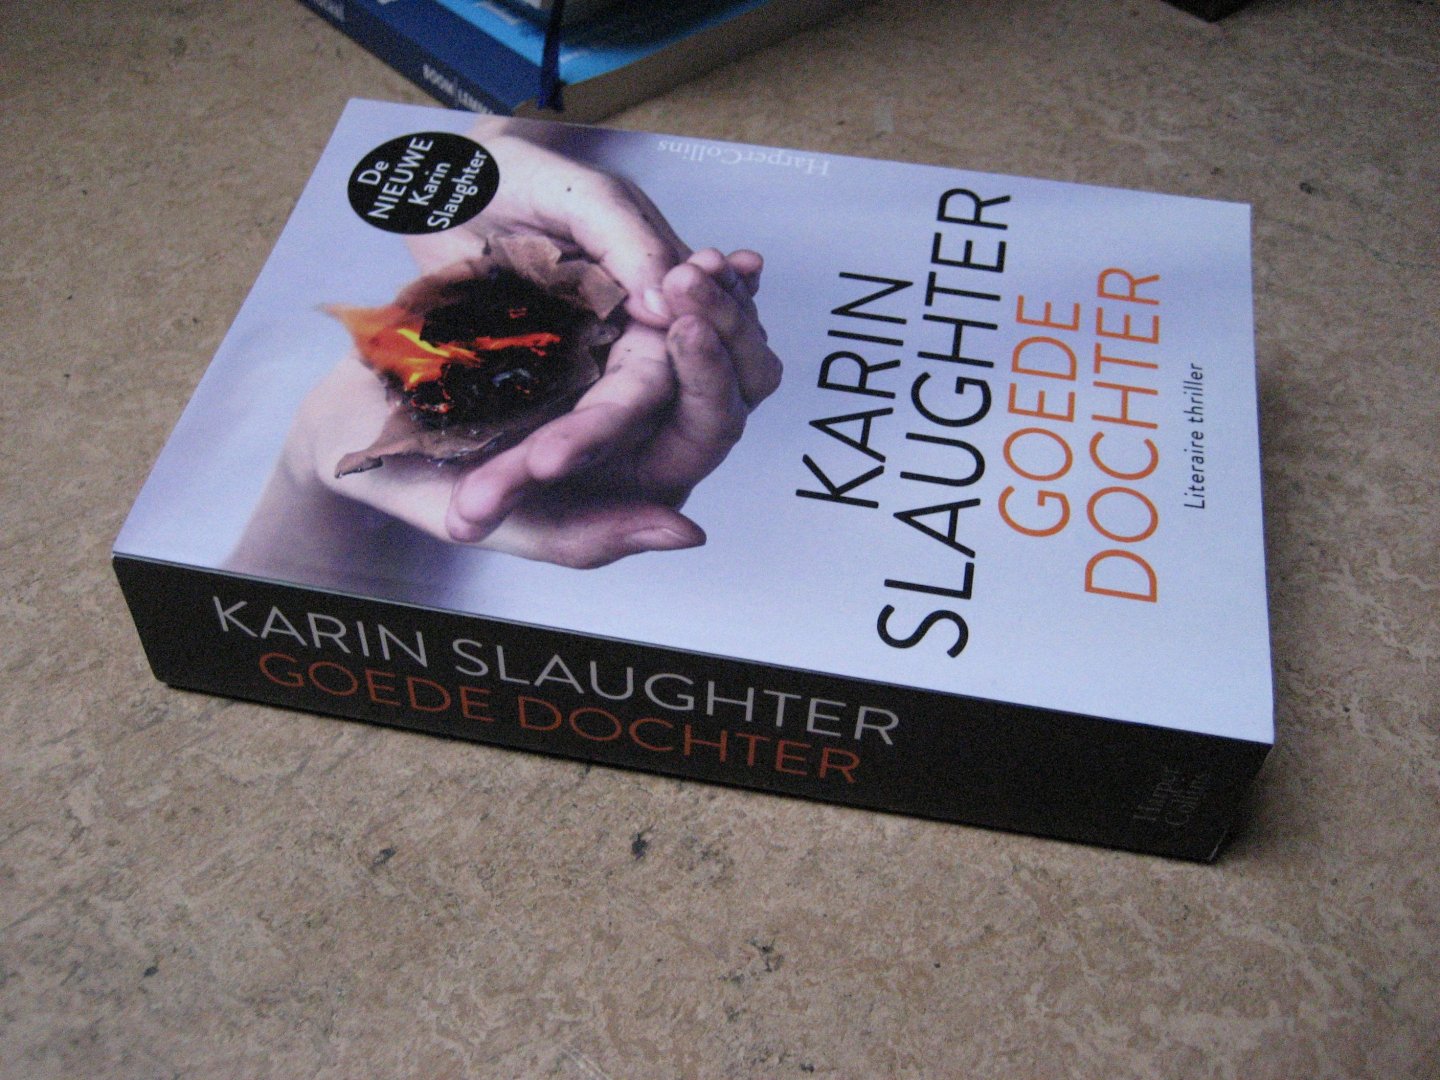 Slaughter, Karin - Goede dochter